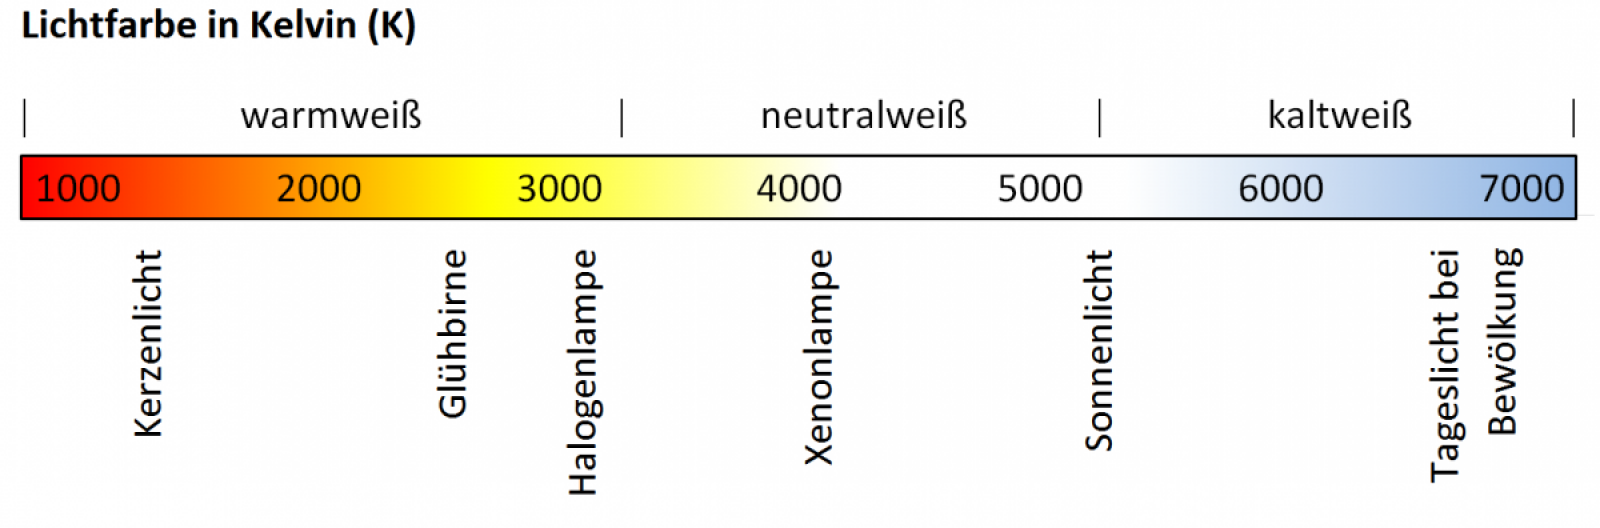 Skala der Lichtfarbe (in Kelvin) von 1000 K (rot) über 5000 K (weiß) bis zu 7000 K (bläulich)